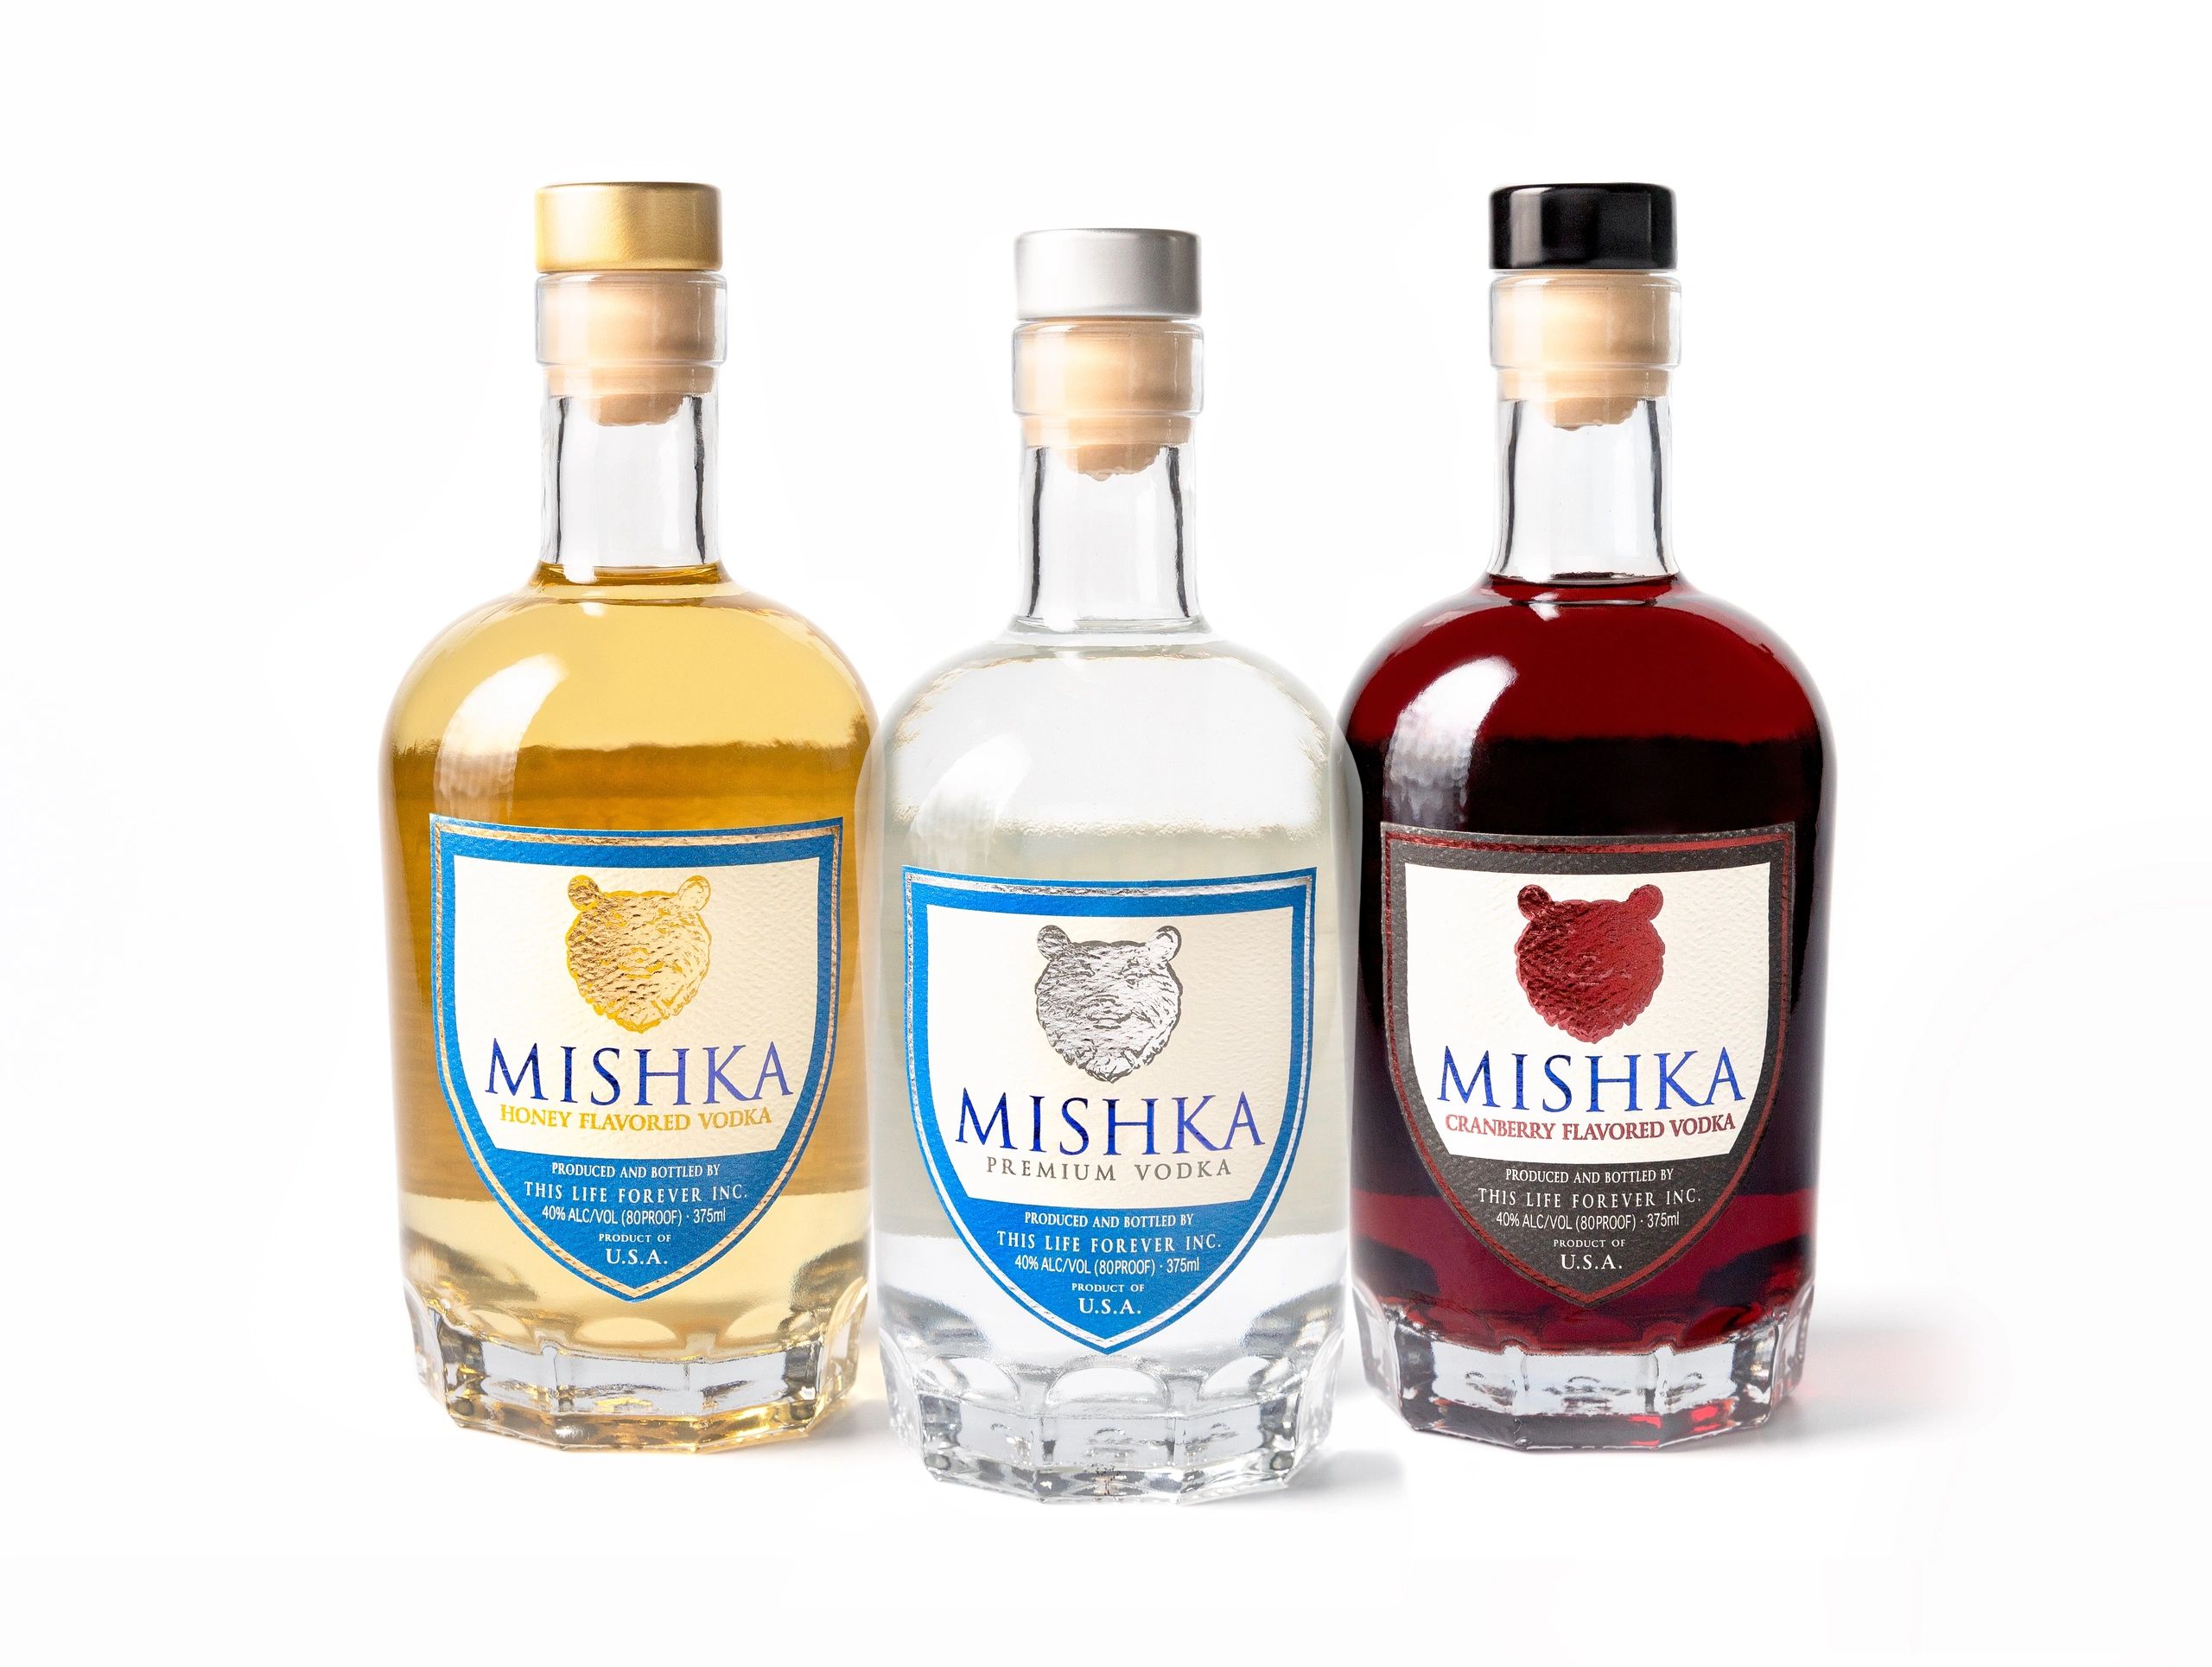 Mishka Premium Vodka